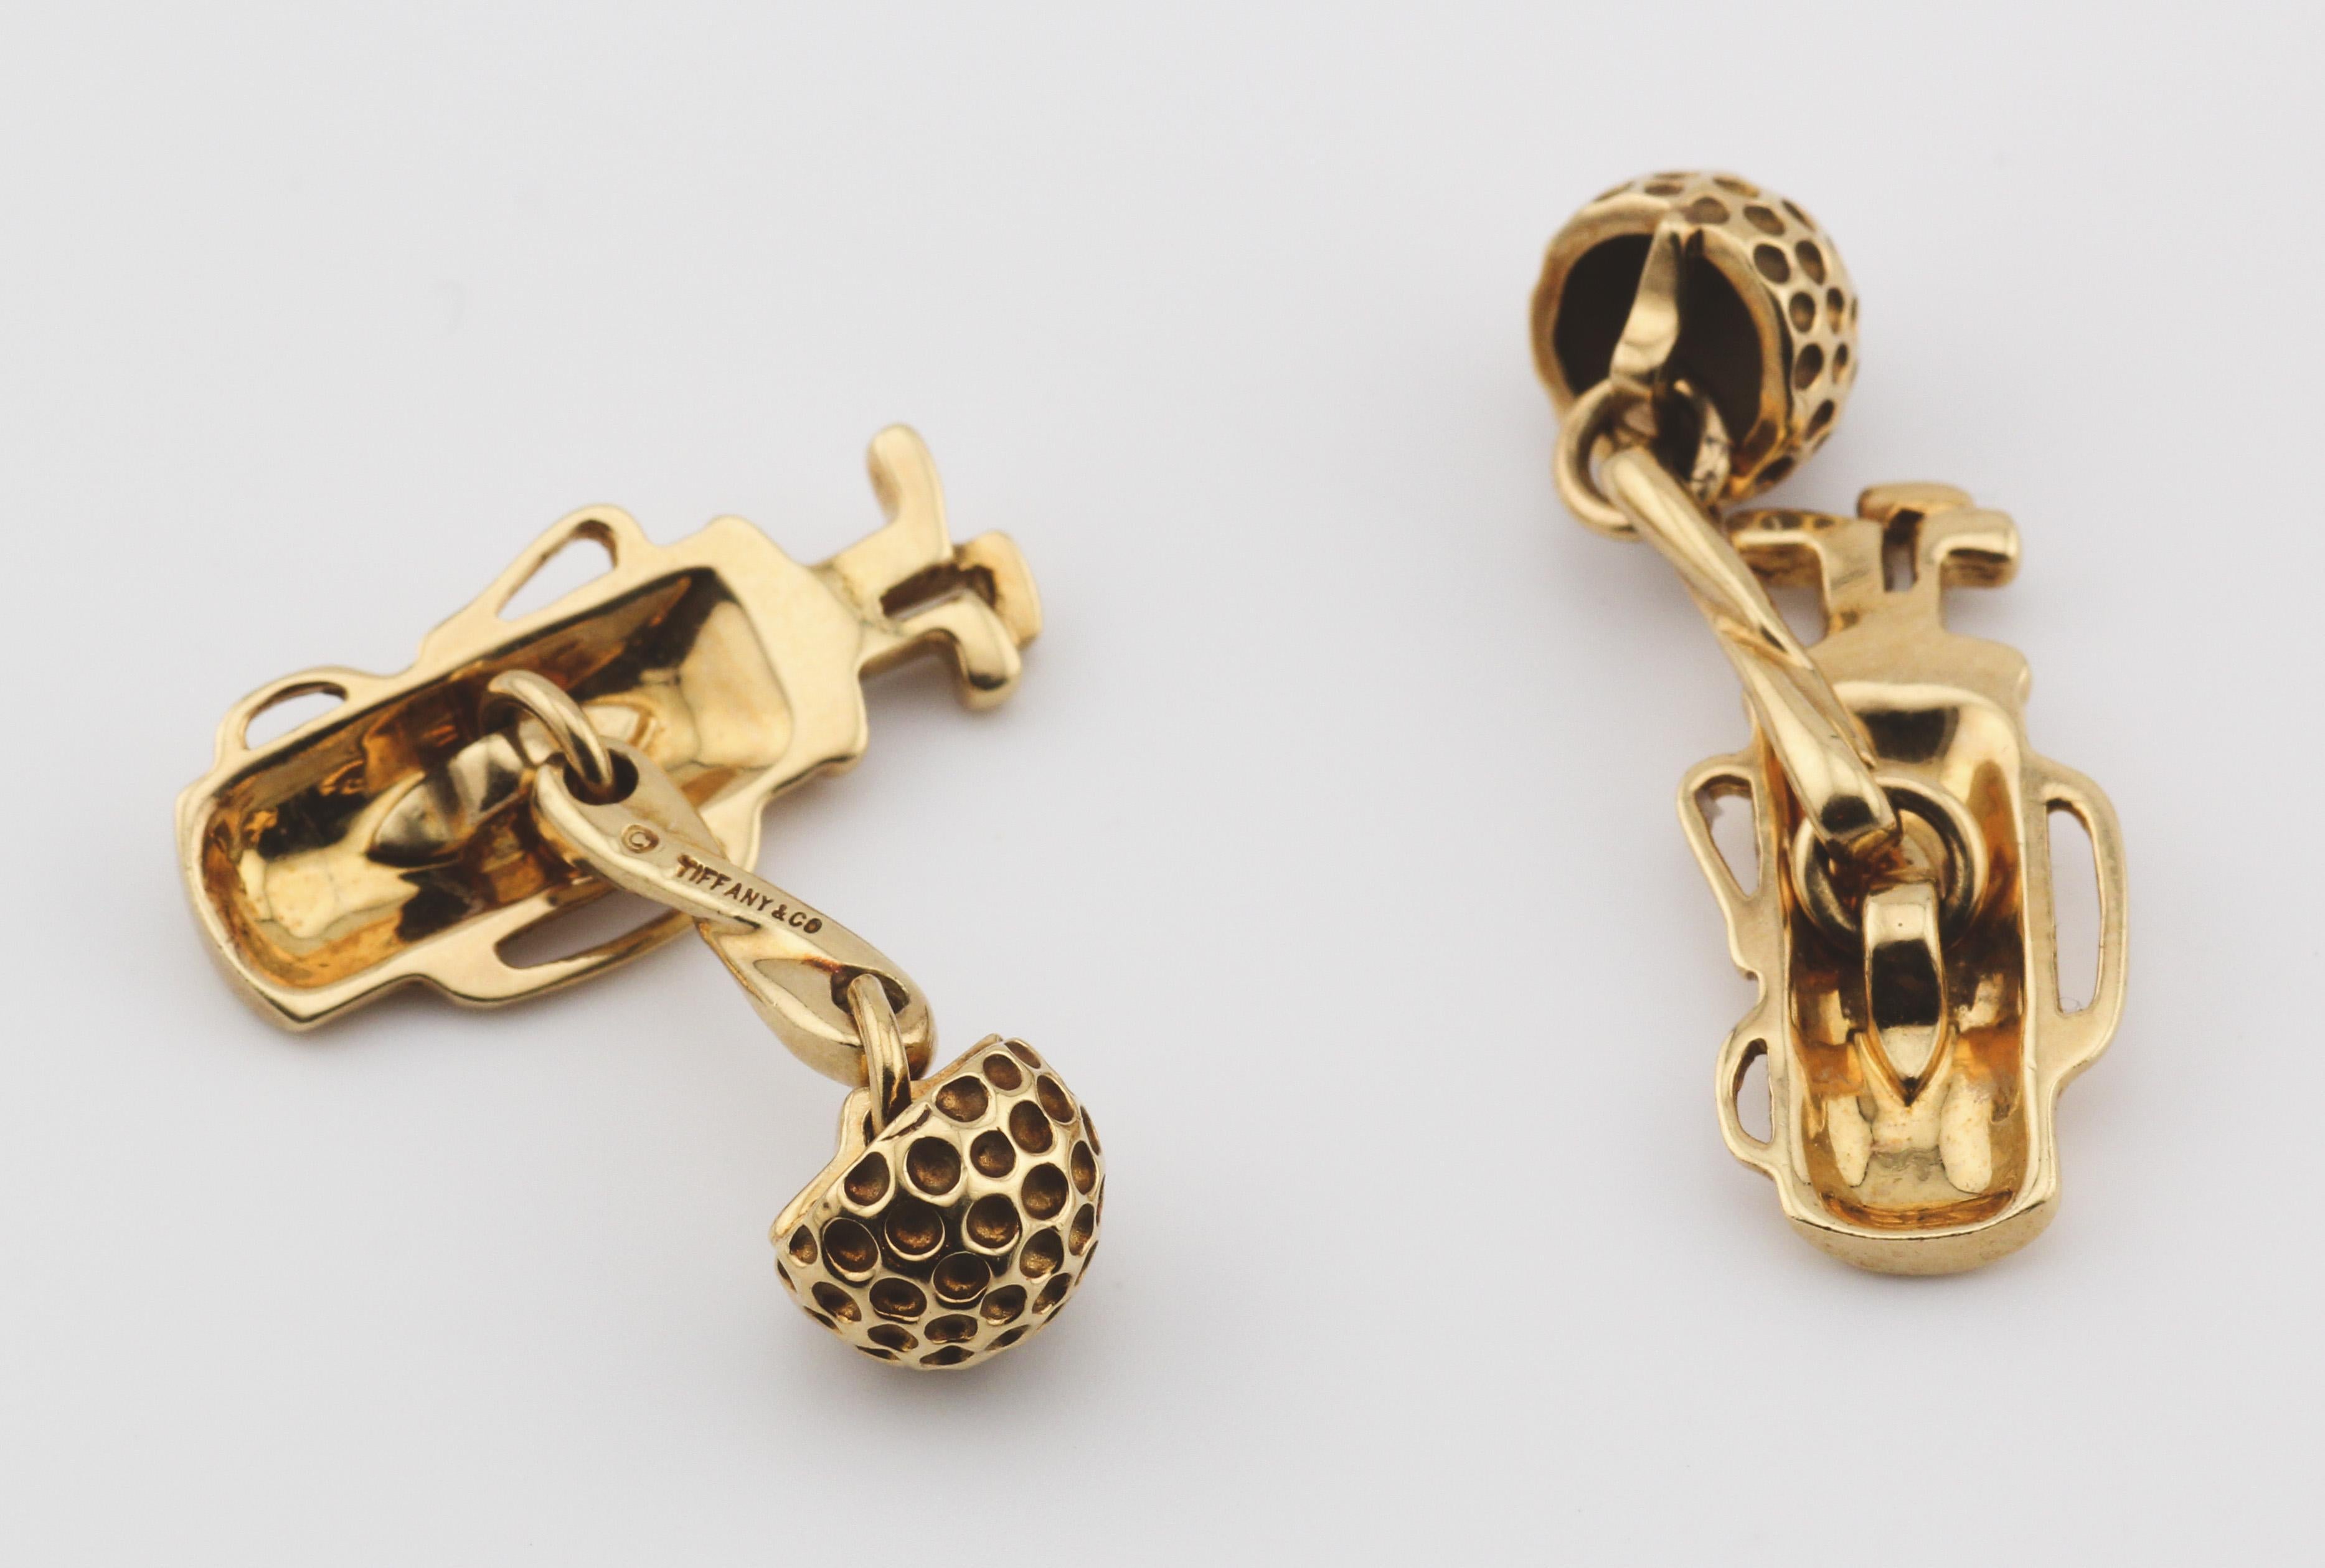 UpUp Sophistication : Boutons de manchette à motif de golf en or jaune 18 carats de Tiffany & Co. (Circa 1980)
Ces boutons de manchette en or jaune 18 carats de Tiffany & Co., datant des années 1980, apportent une touche de fantaisie et d'élégance